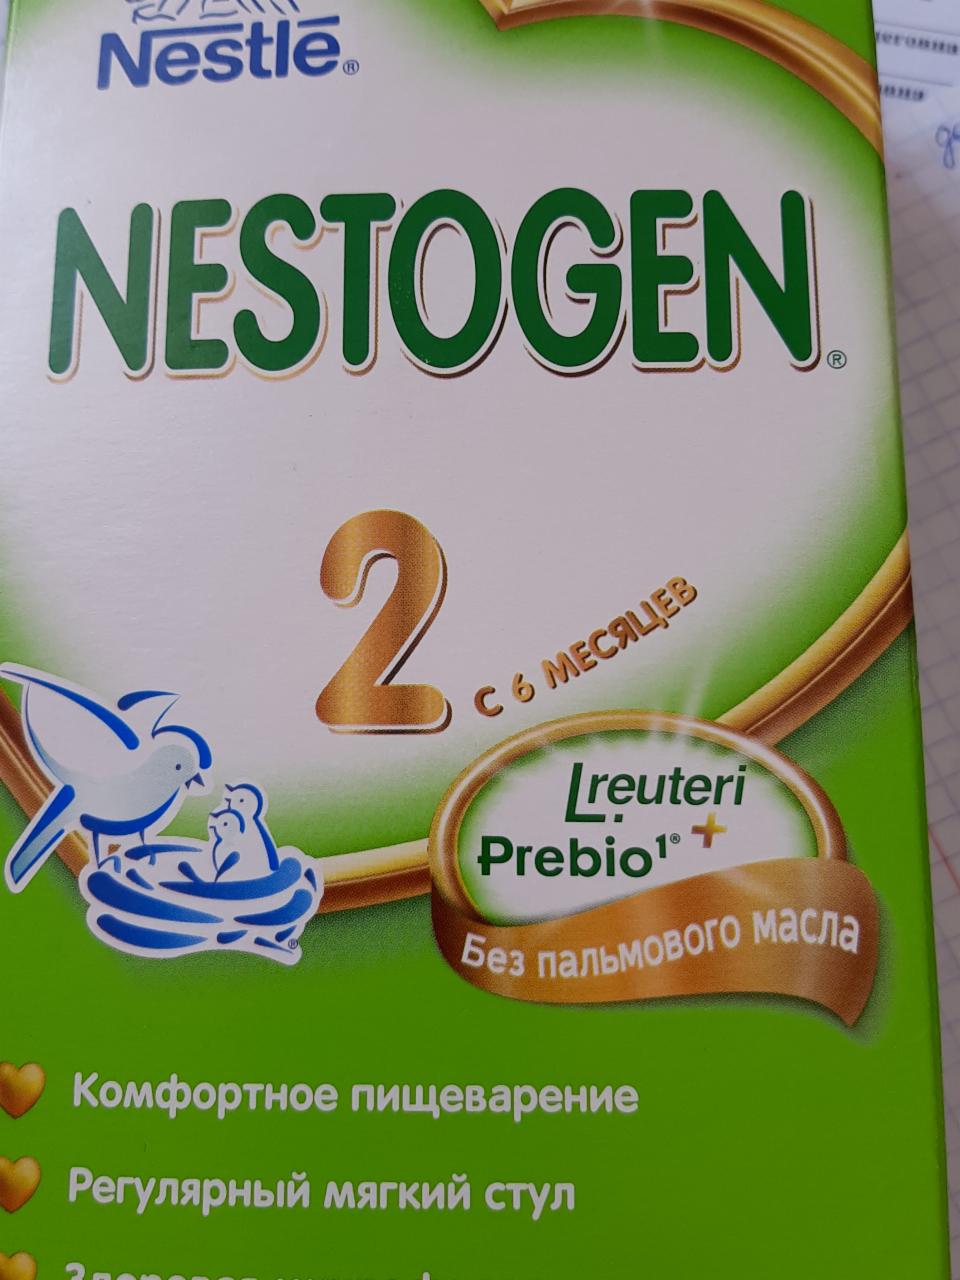 Фото - смесь Нестожен 2 Nestlé